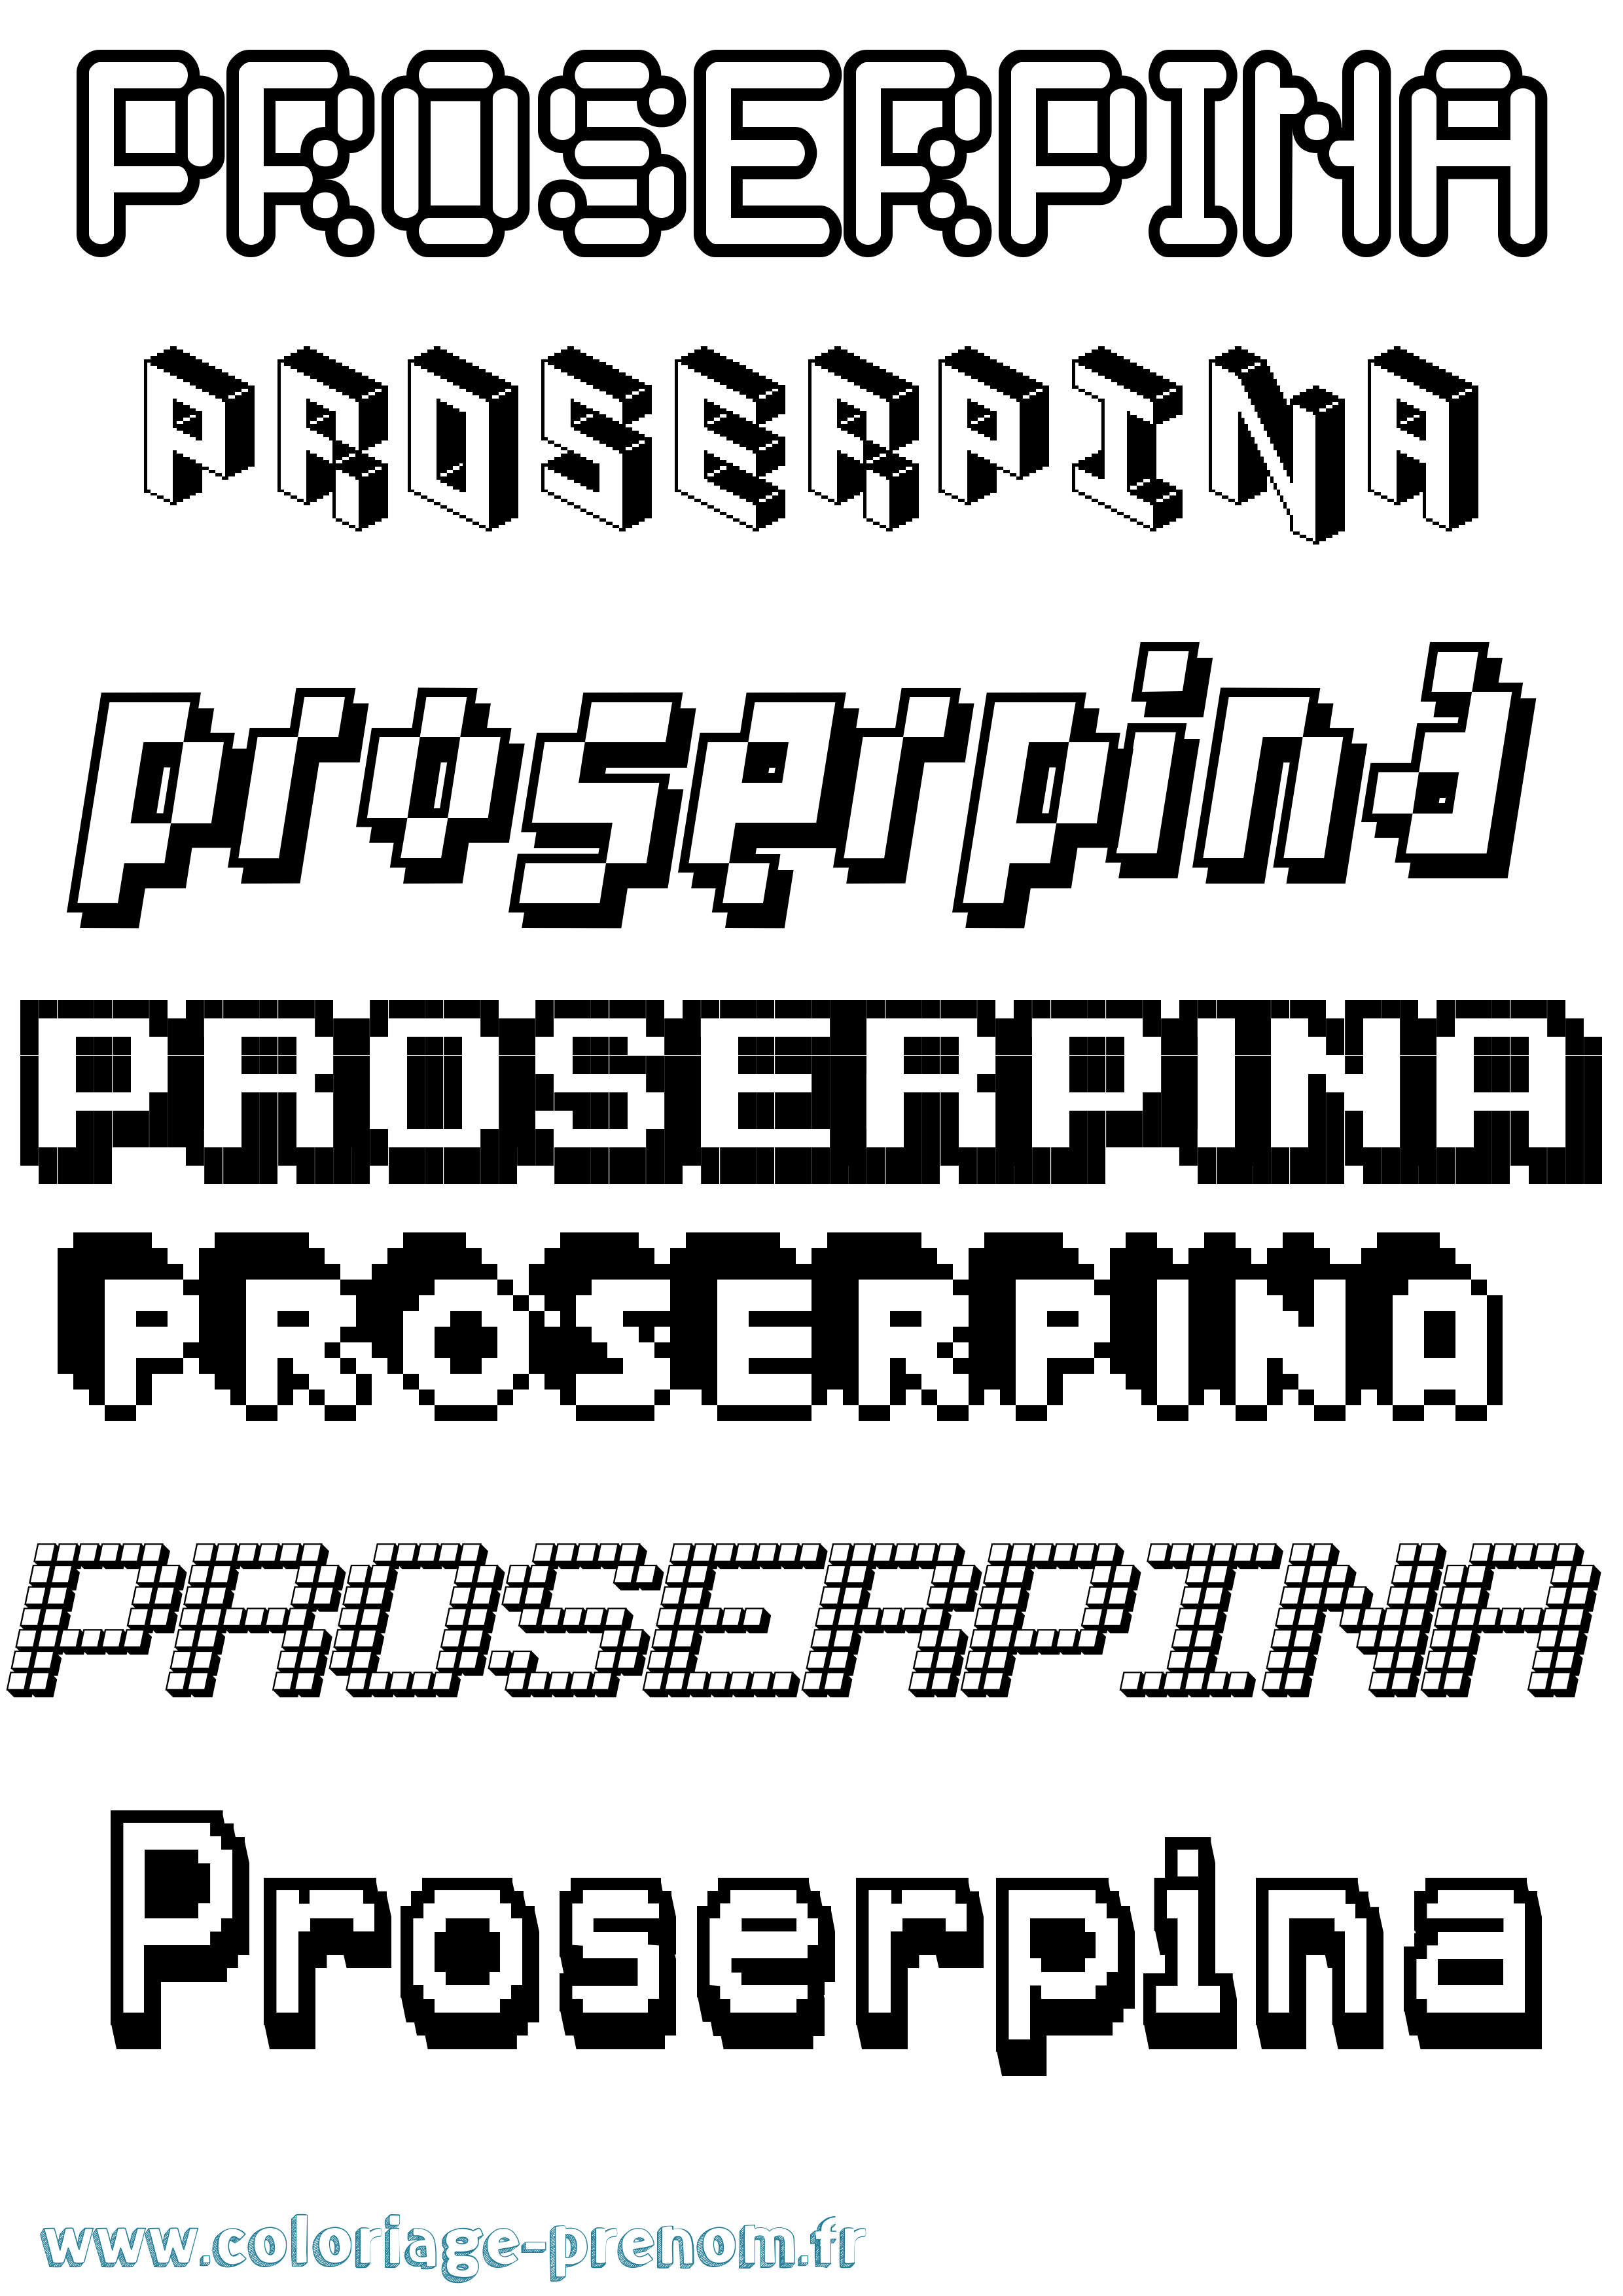 Coloriage prénom Proserpina Pixel